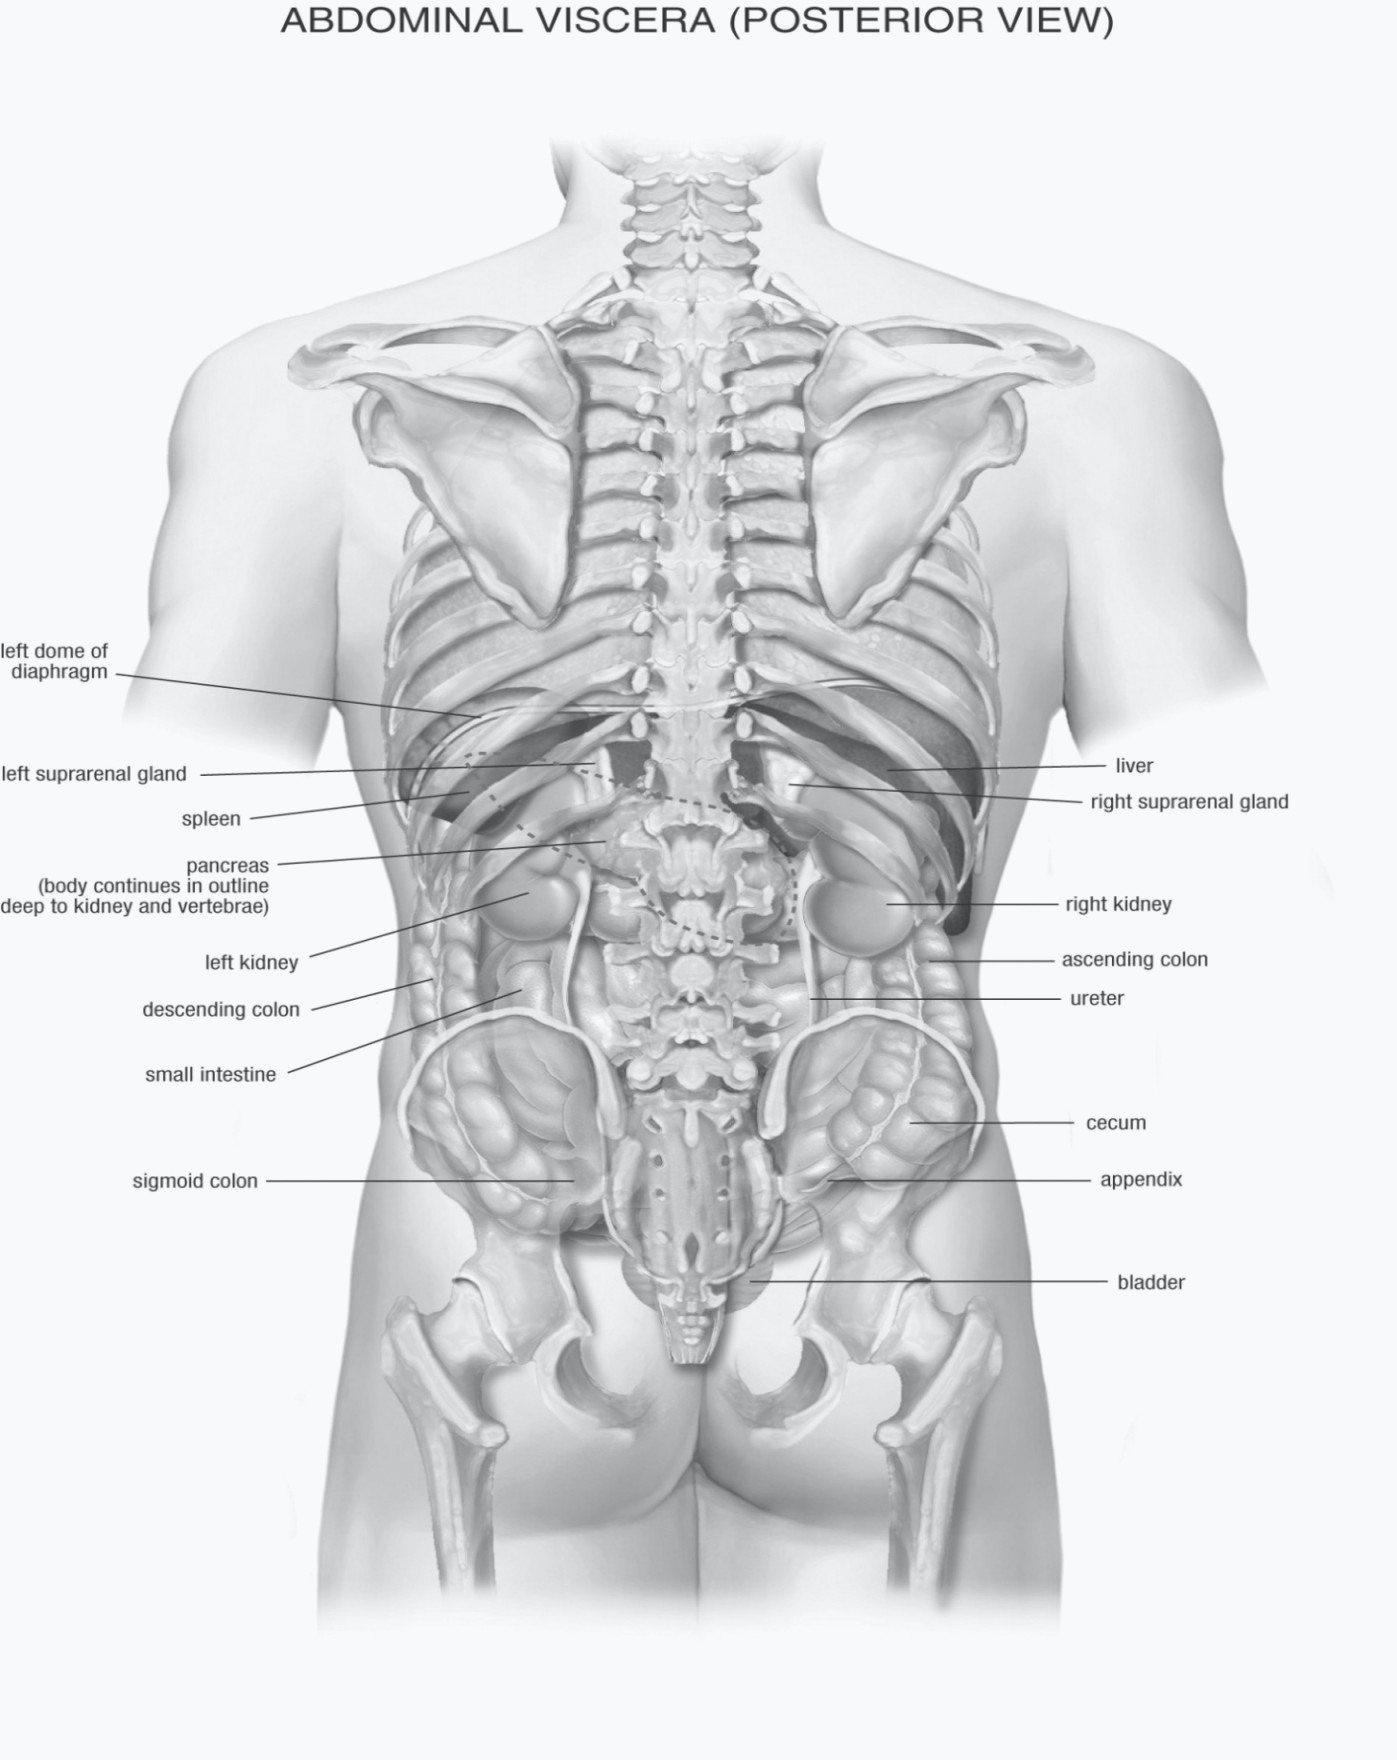 Анатомия человека фото мужчины строение и расположение